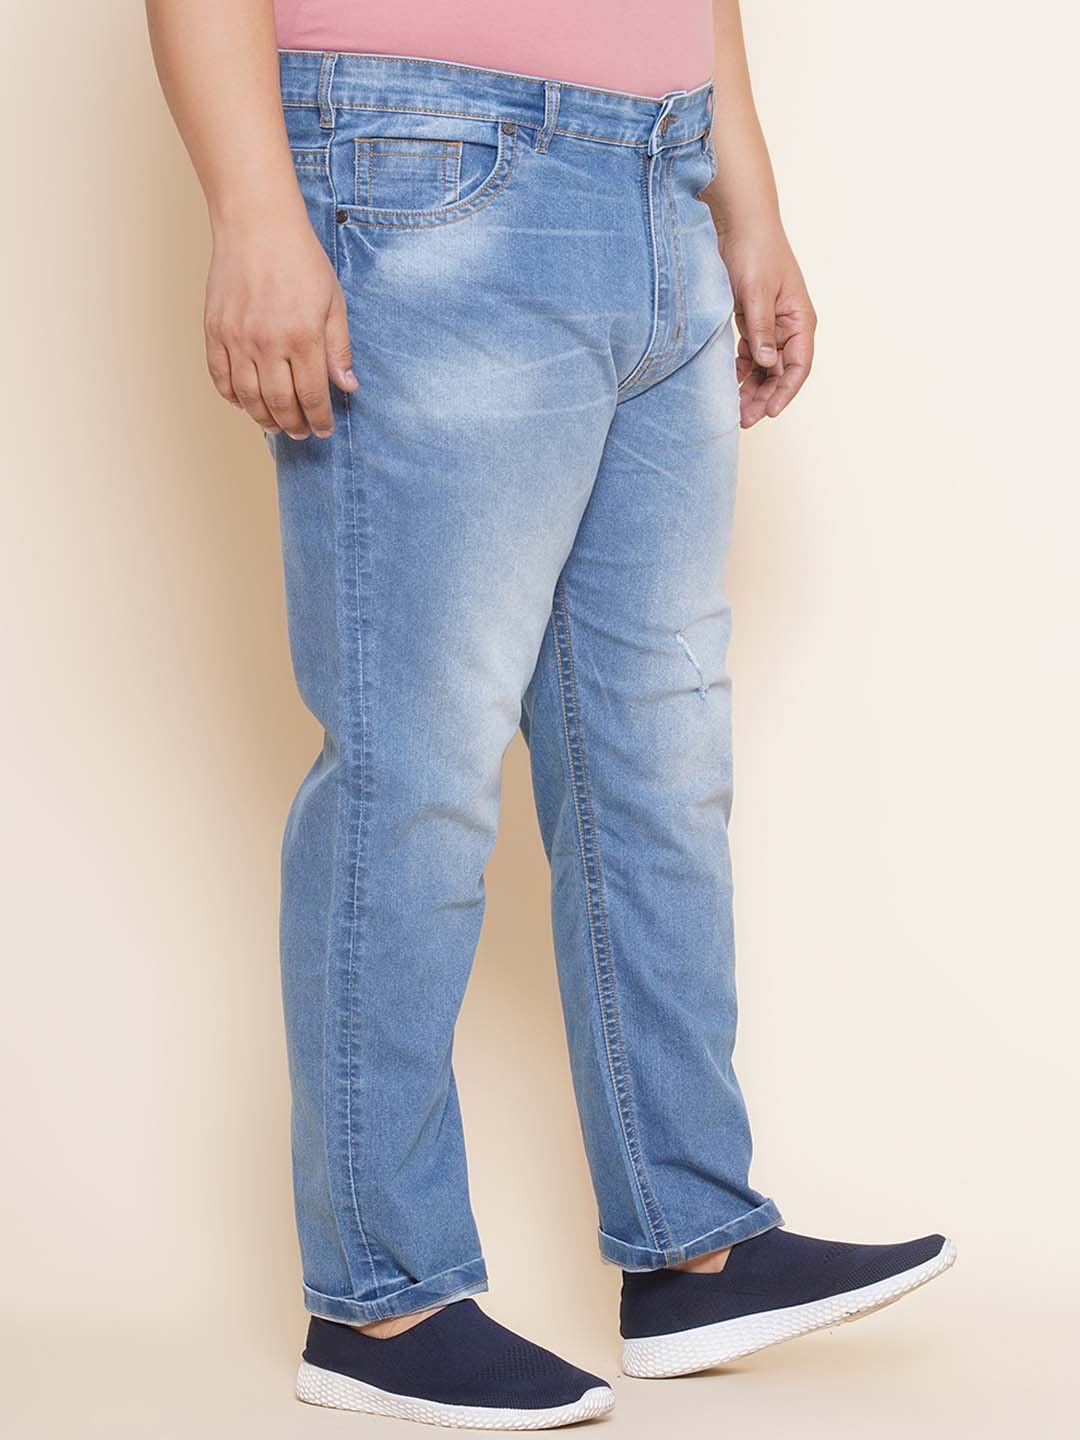 bottomwear/jeans/EJPJ25101/ejpj25101-3.jpg